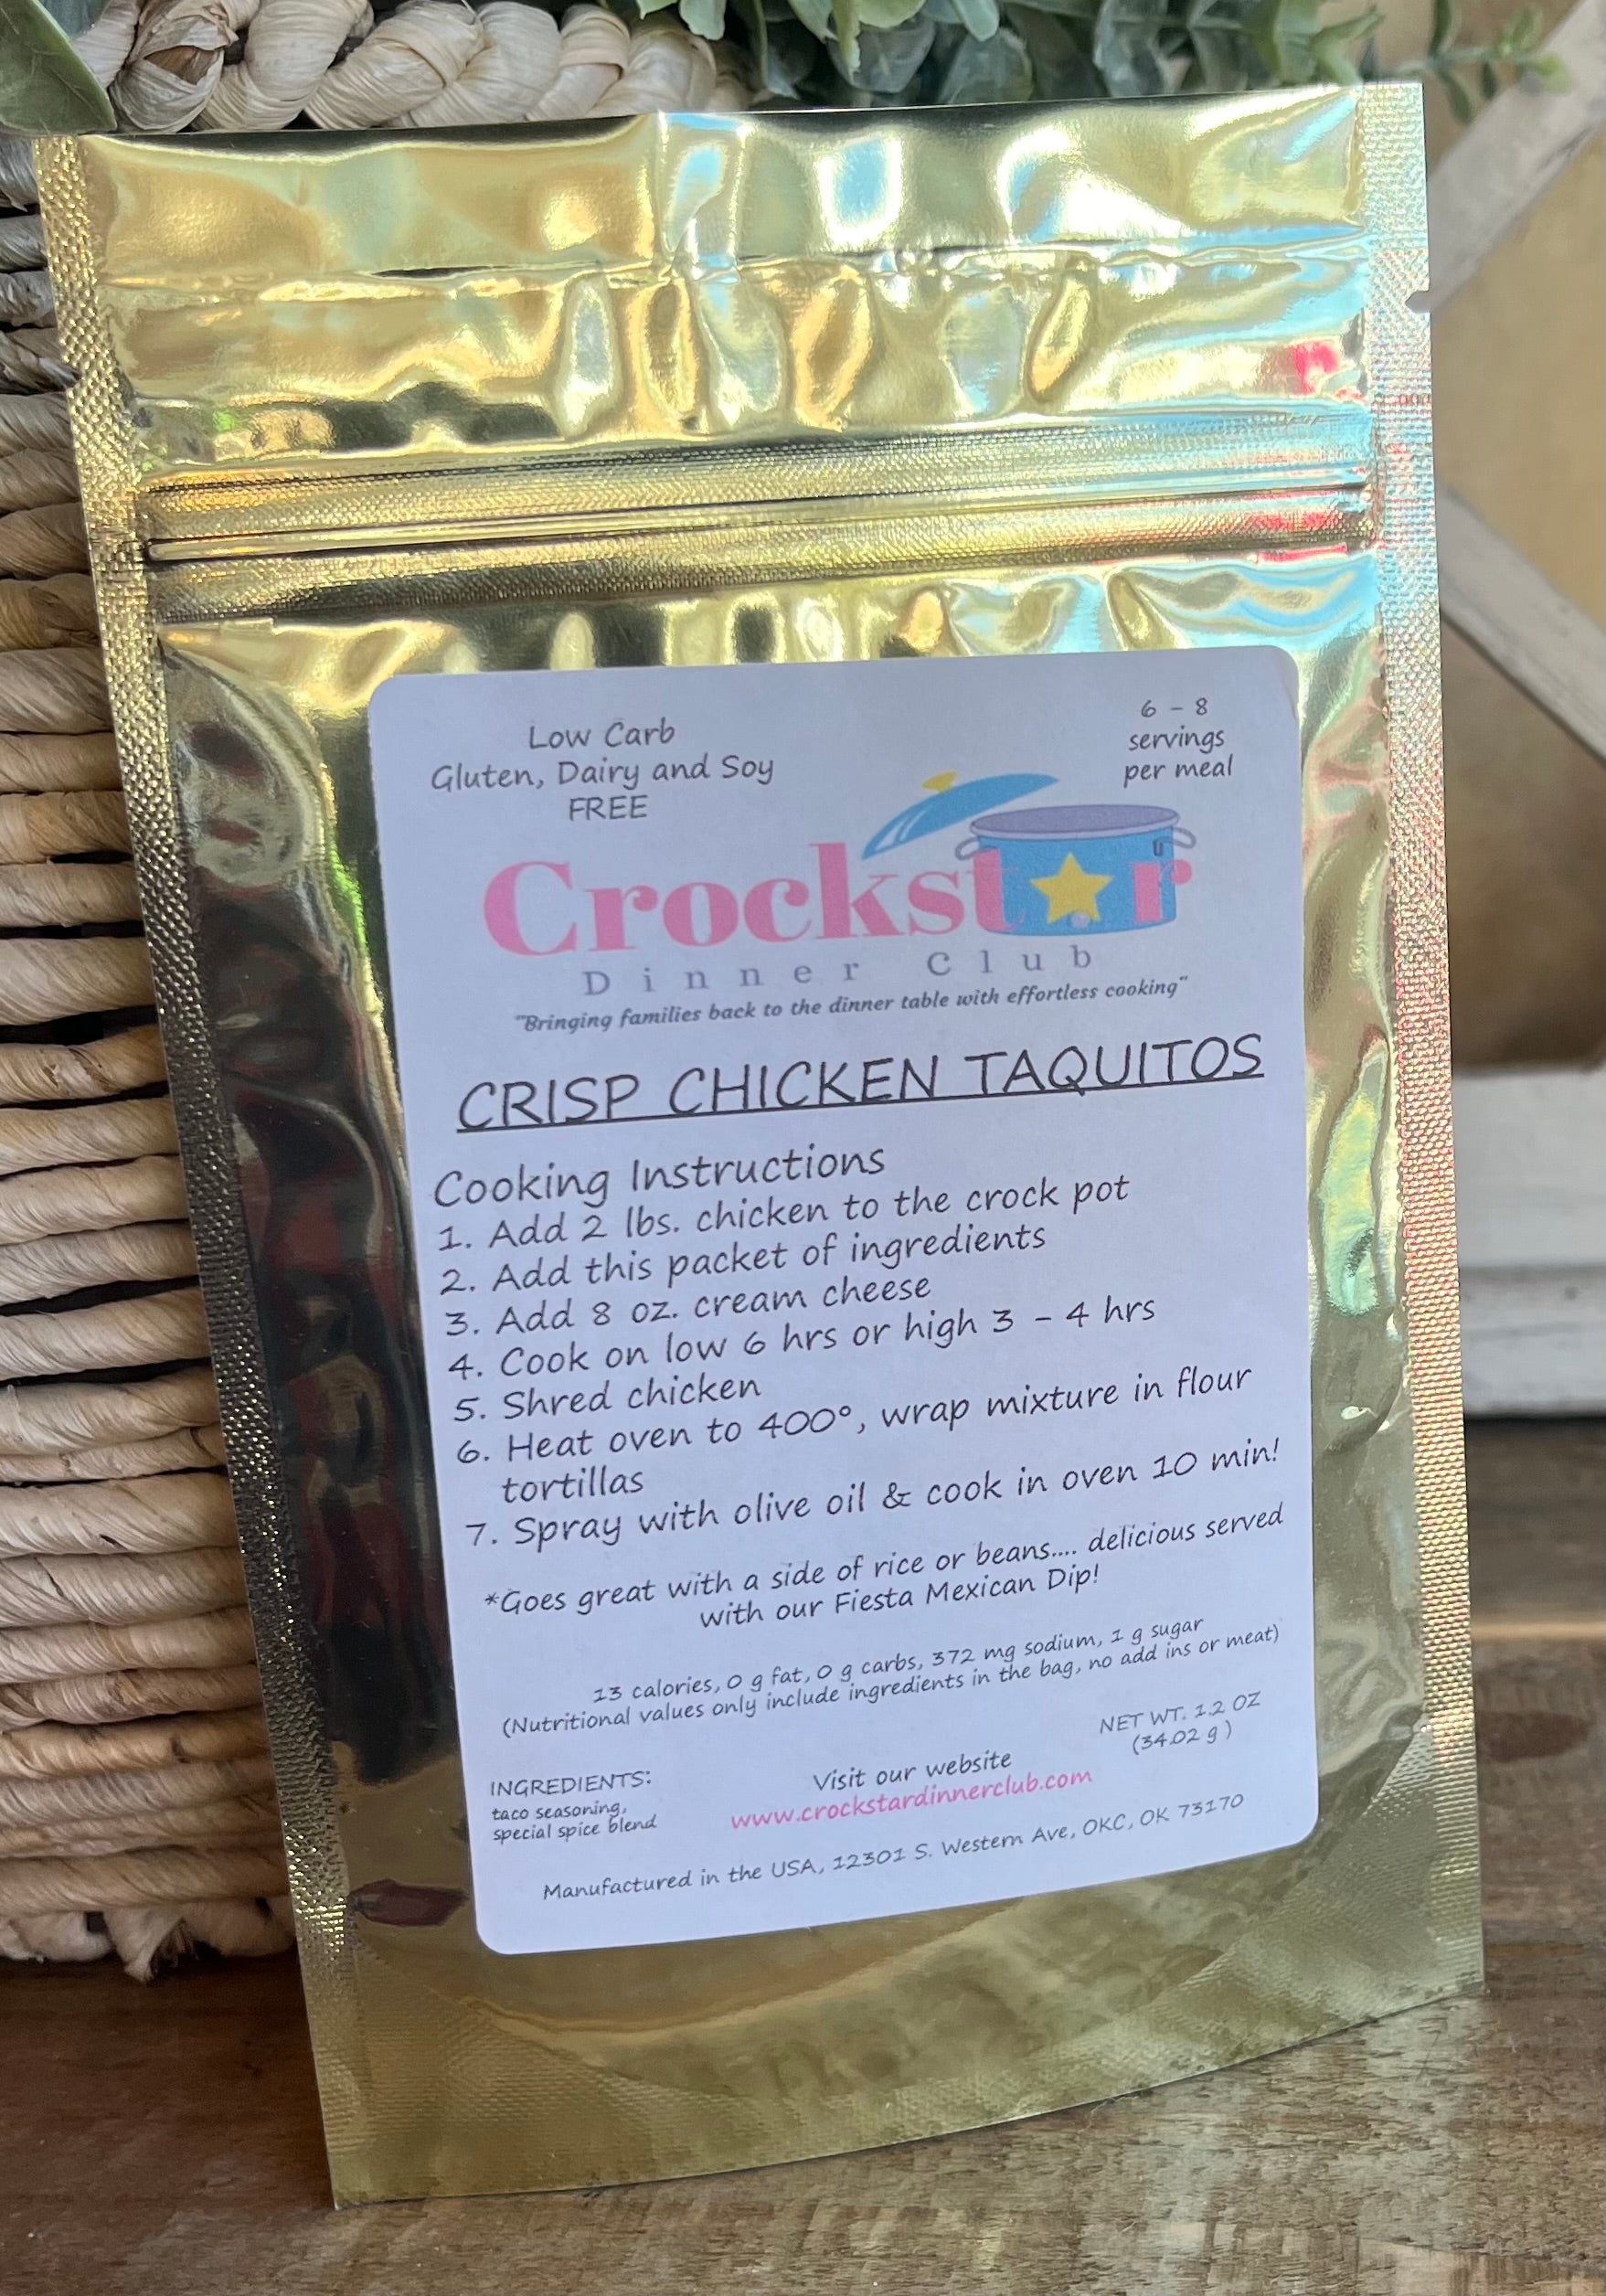 Crisp Chicken Taquitos - Crockstar Dinner Club